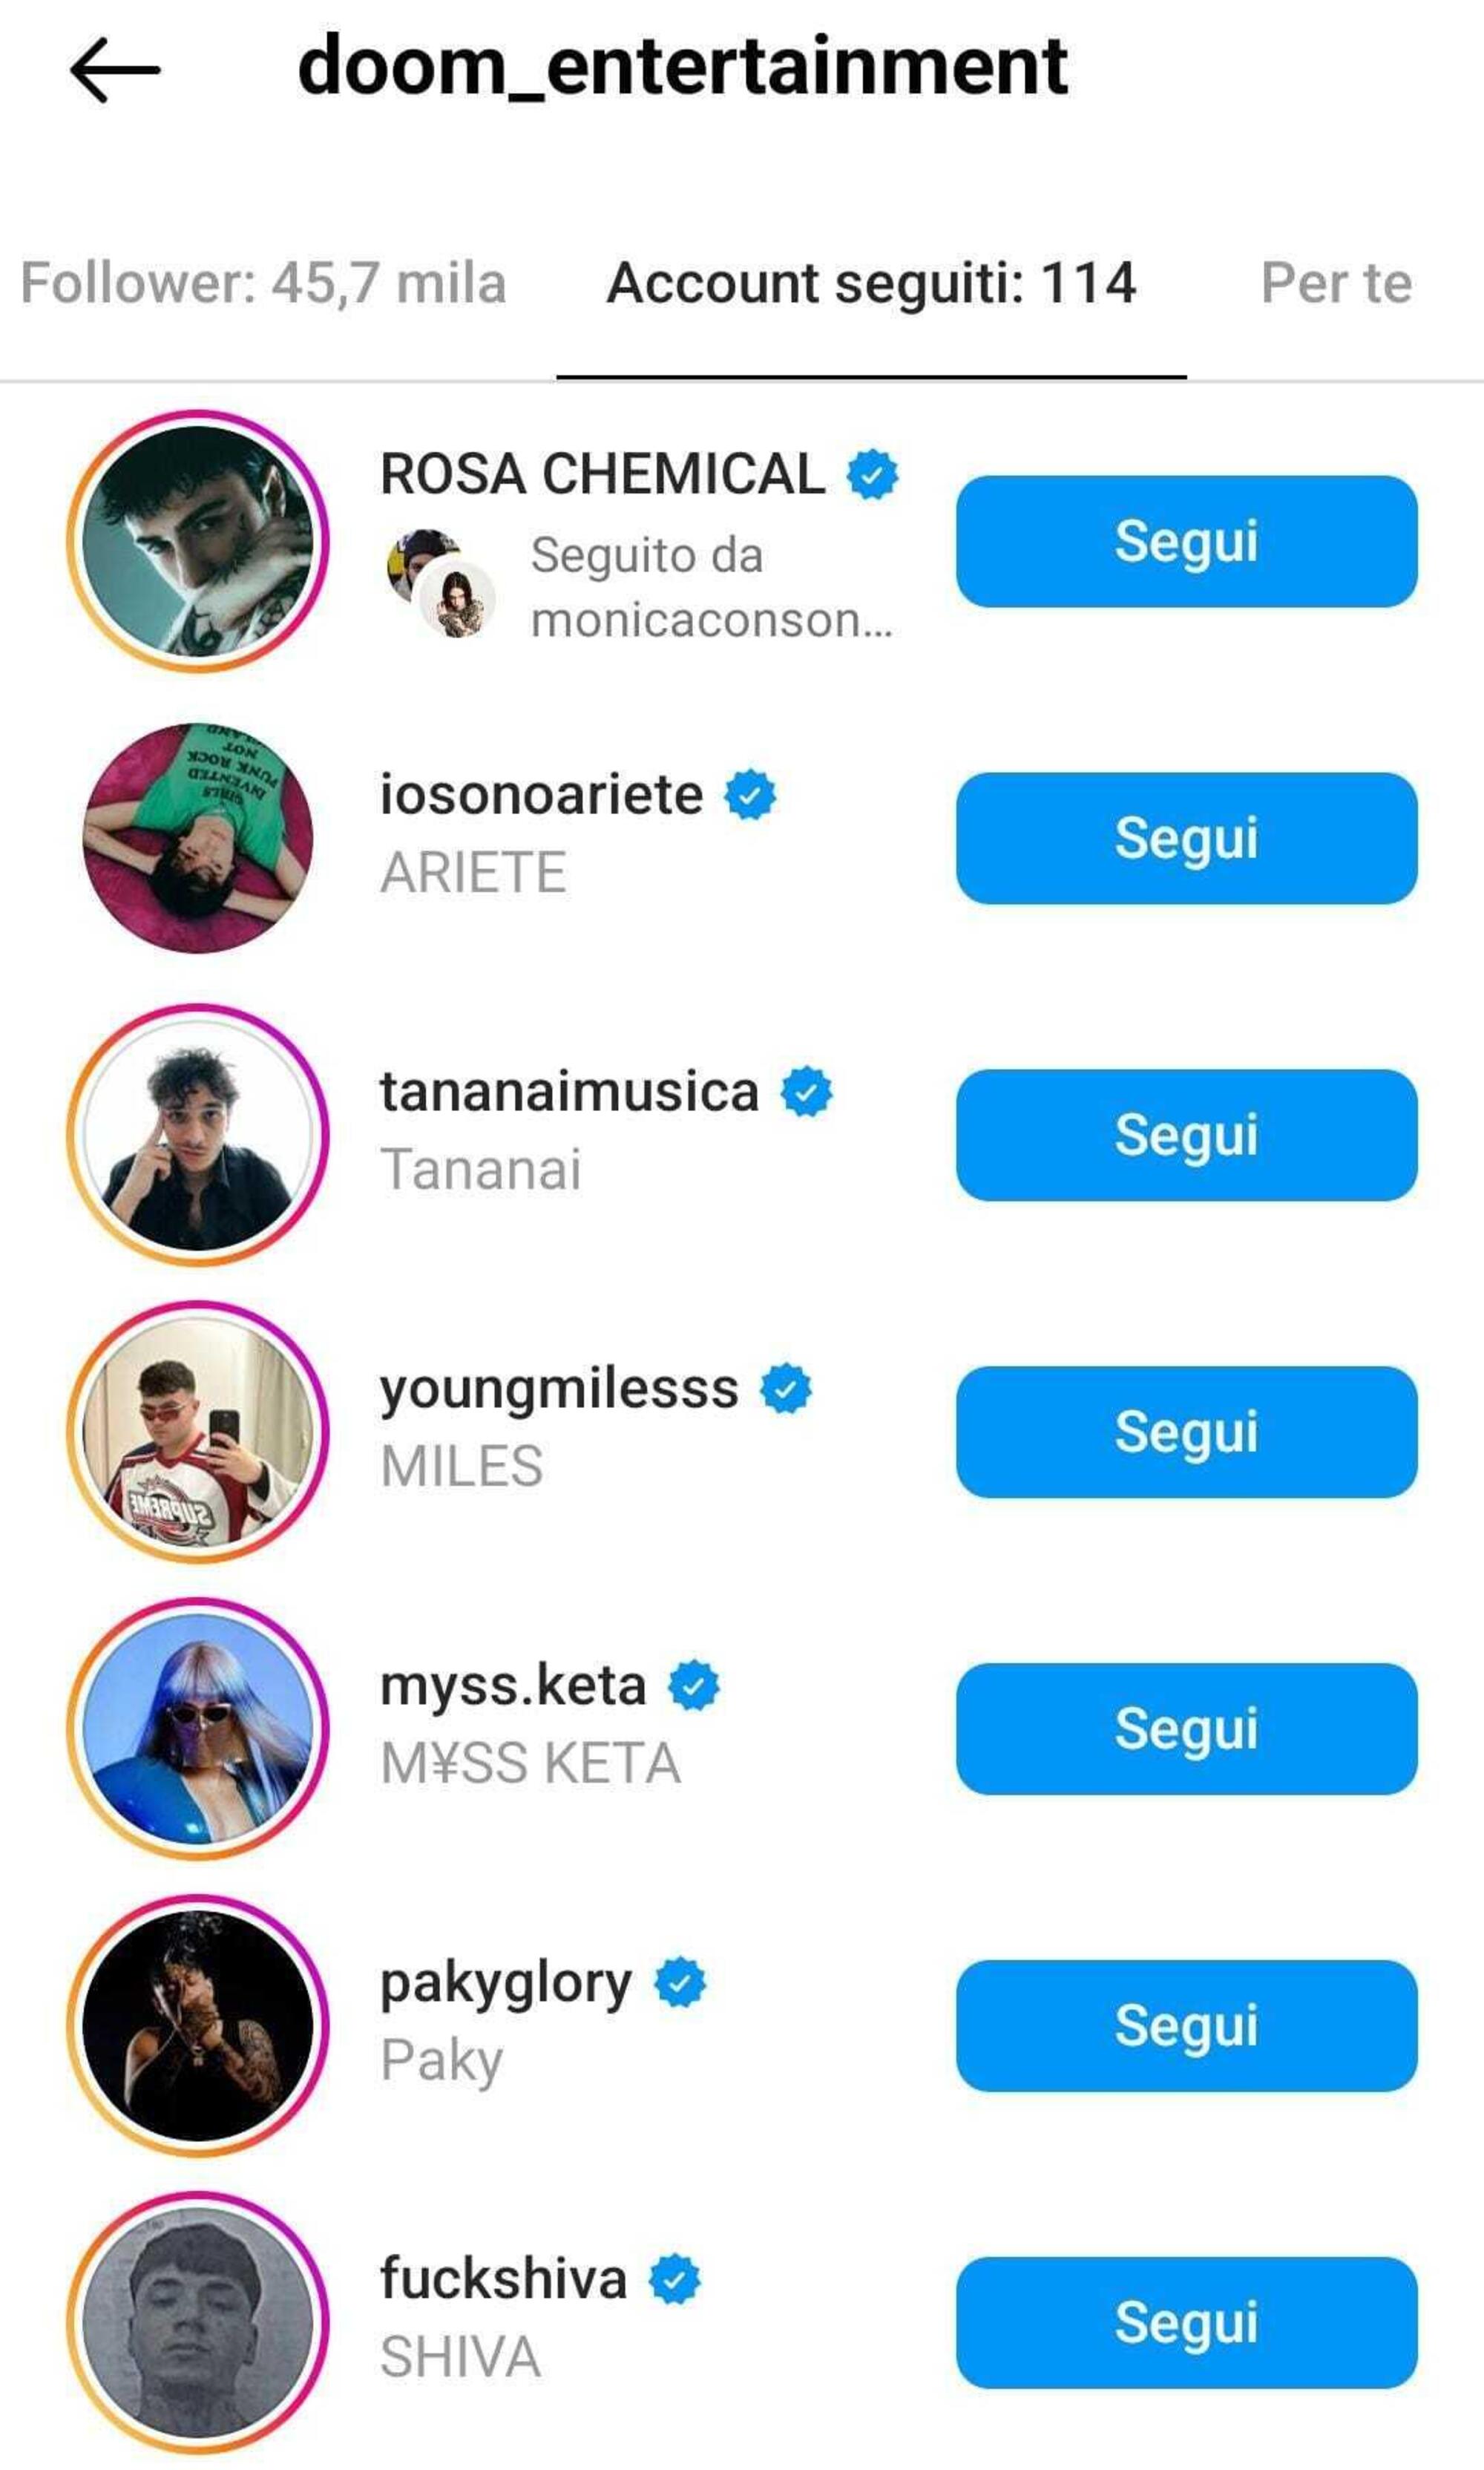 Alcuni degli artisti seguiti su Instagram dalla DOOM Entertainment, dove per&ograve; non appare pi&ugrave; Achille Lauro